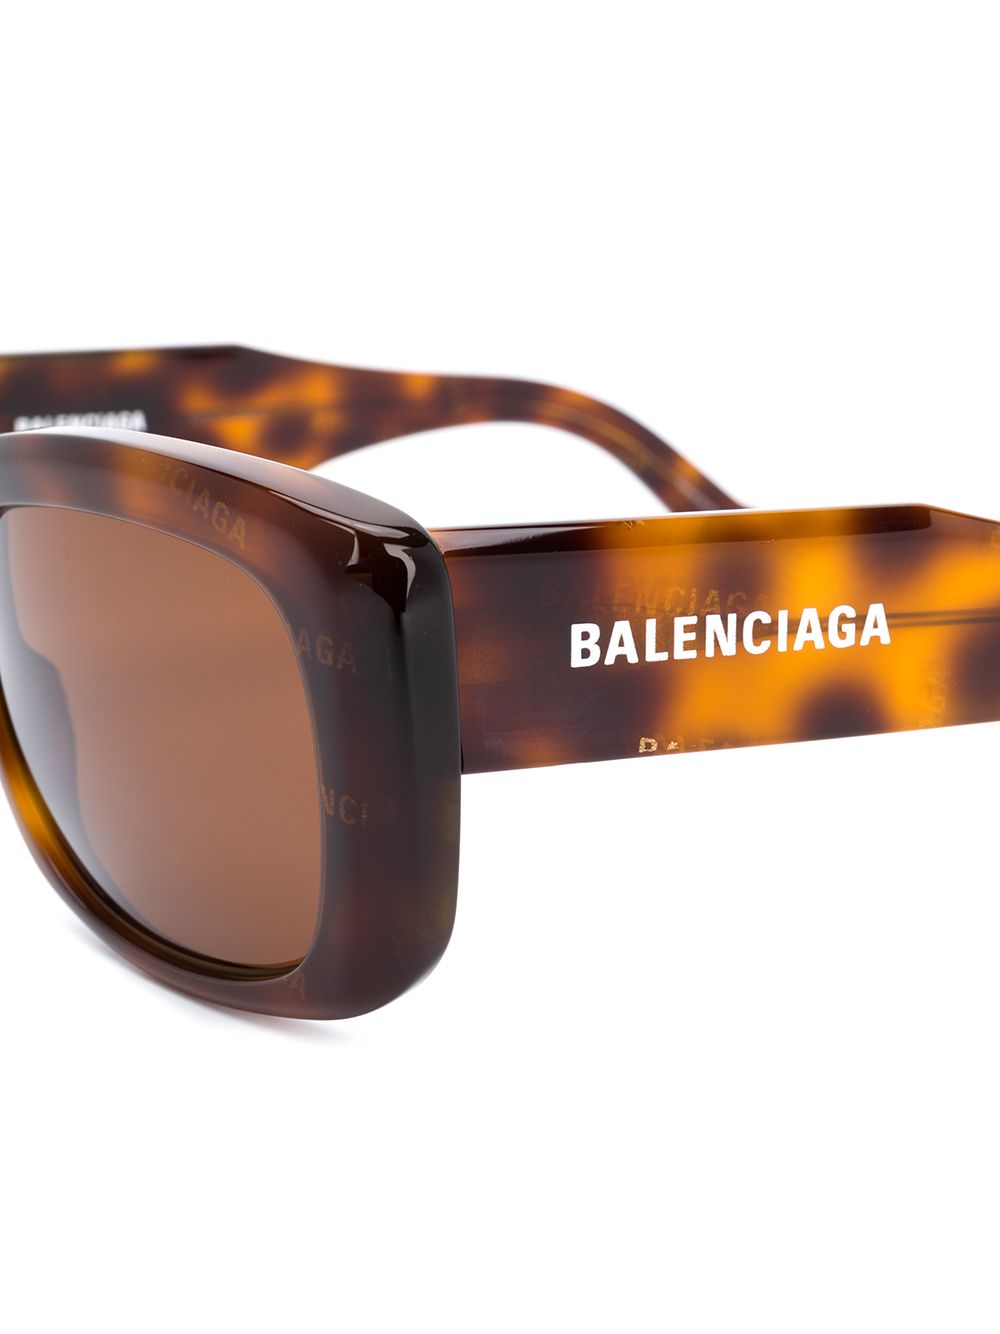 фото Balenciaga eyewear солнцезащитные очки черепаховой расцветки